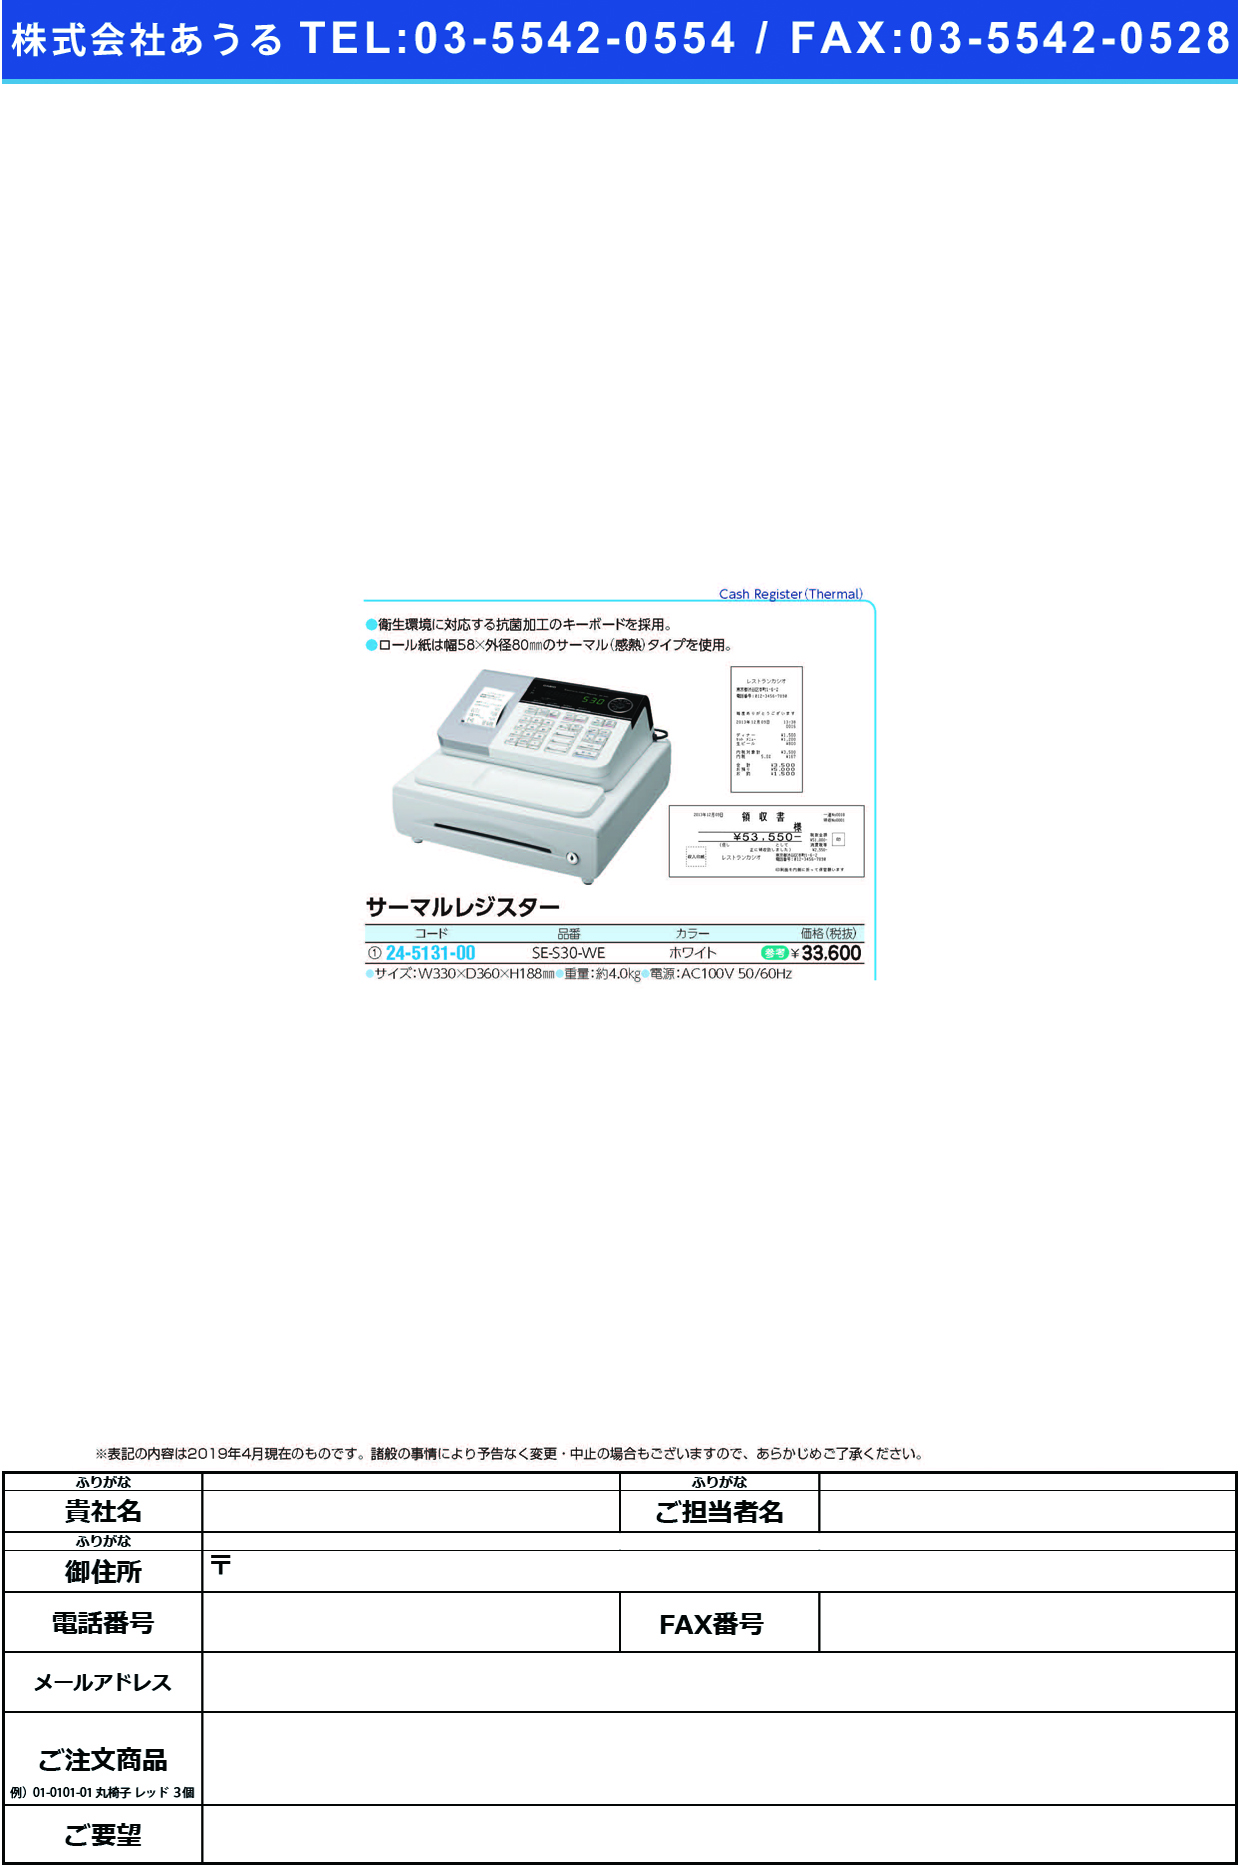 (24-5131-00)サーマルレジスター SE-S30-WE(ﾎﾜｲﾄ) ｻｰﾏﾙﾚｼﾞｽﾀｰ【1台単位】【2019年カタログ商品】